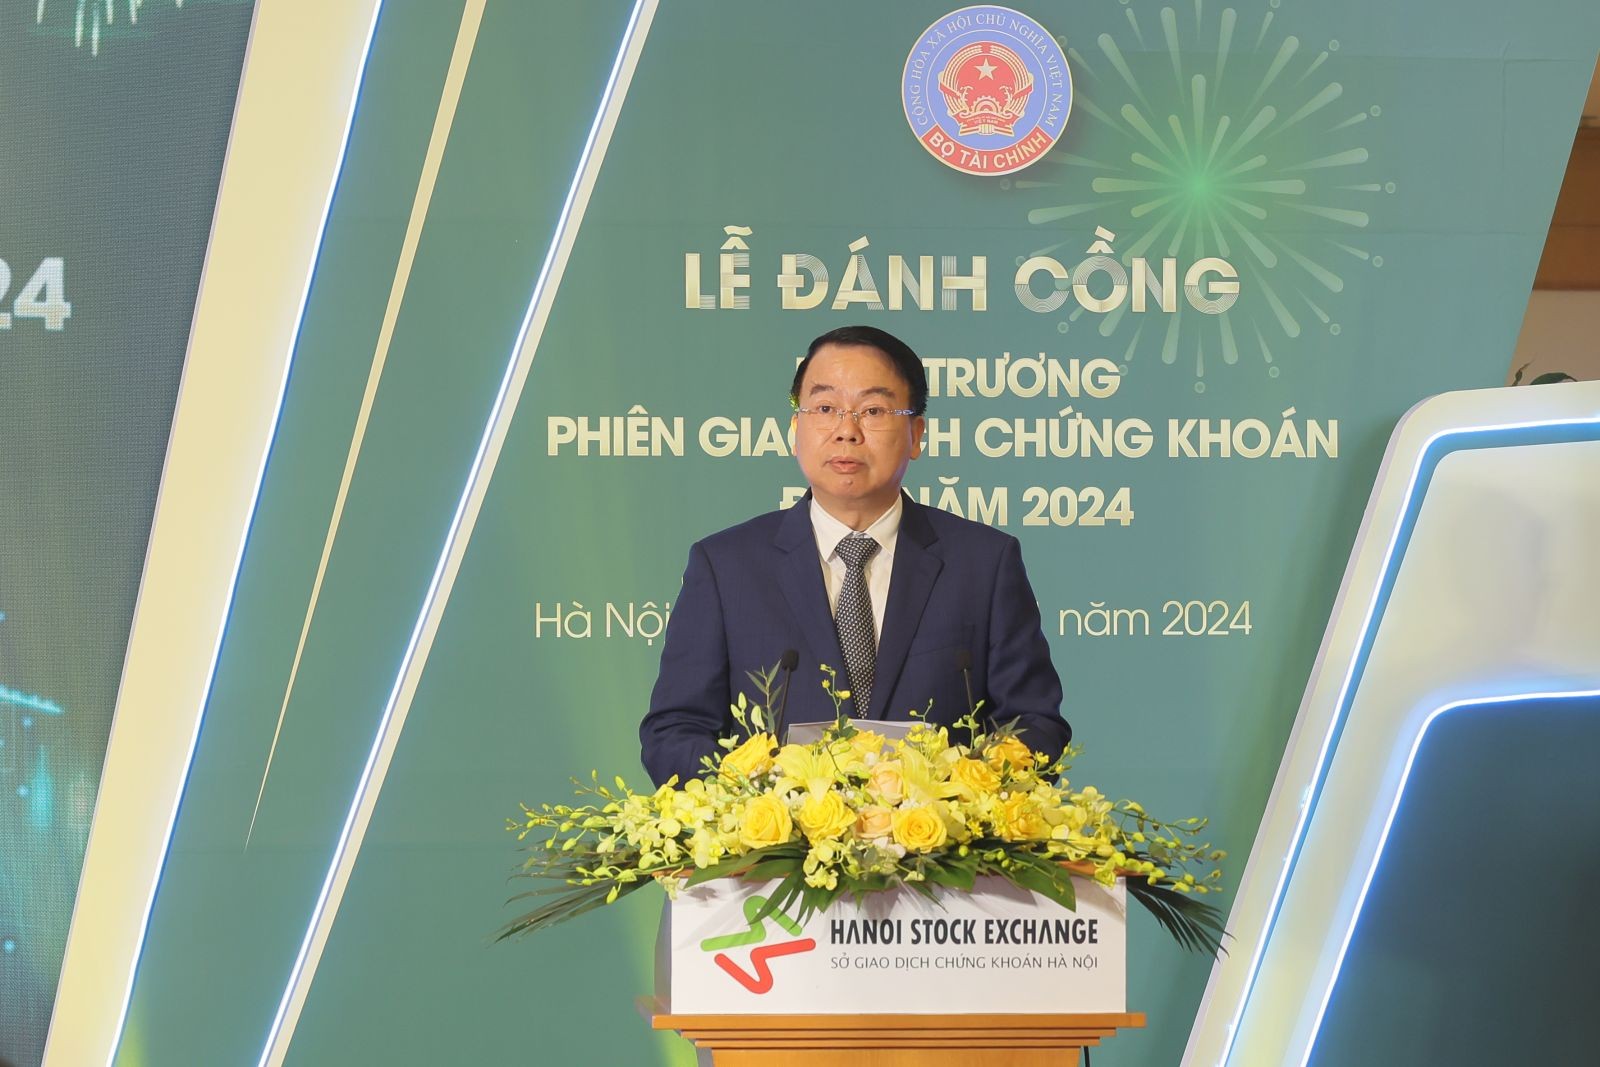 Thứ trưởng Bộ Tài chính Nguyễn Đức Chi đánh cồng khai trương phiên giao dịch chứng khoán đầu năm 2024 tại Sở GDCK Hà Nội - Ảnh 2.